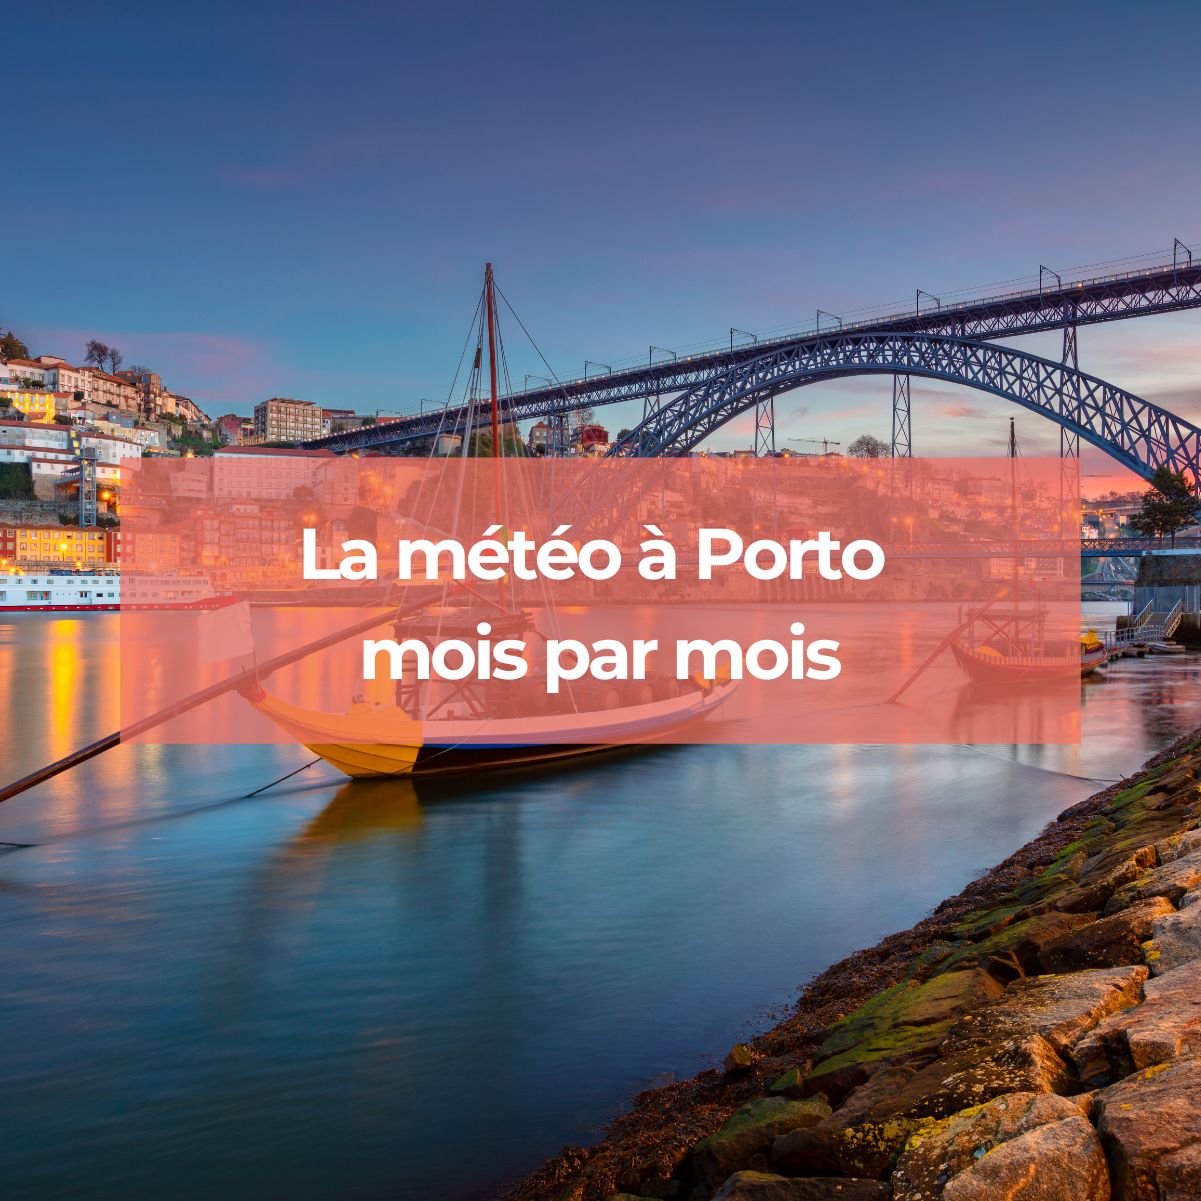 La météo à Porto mois par mois